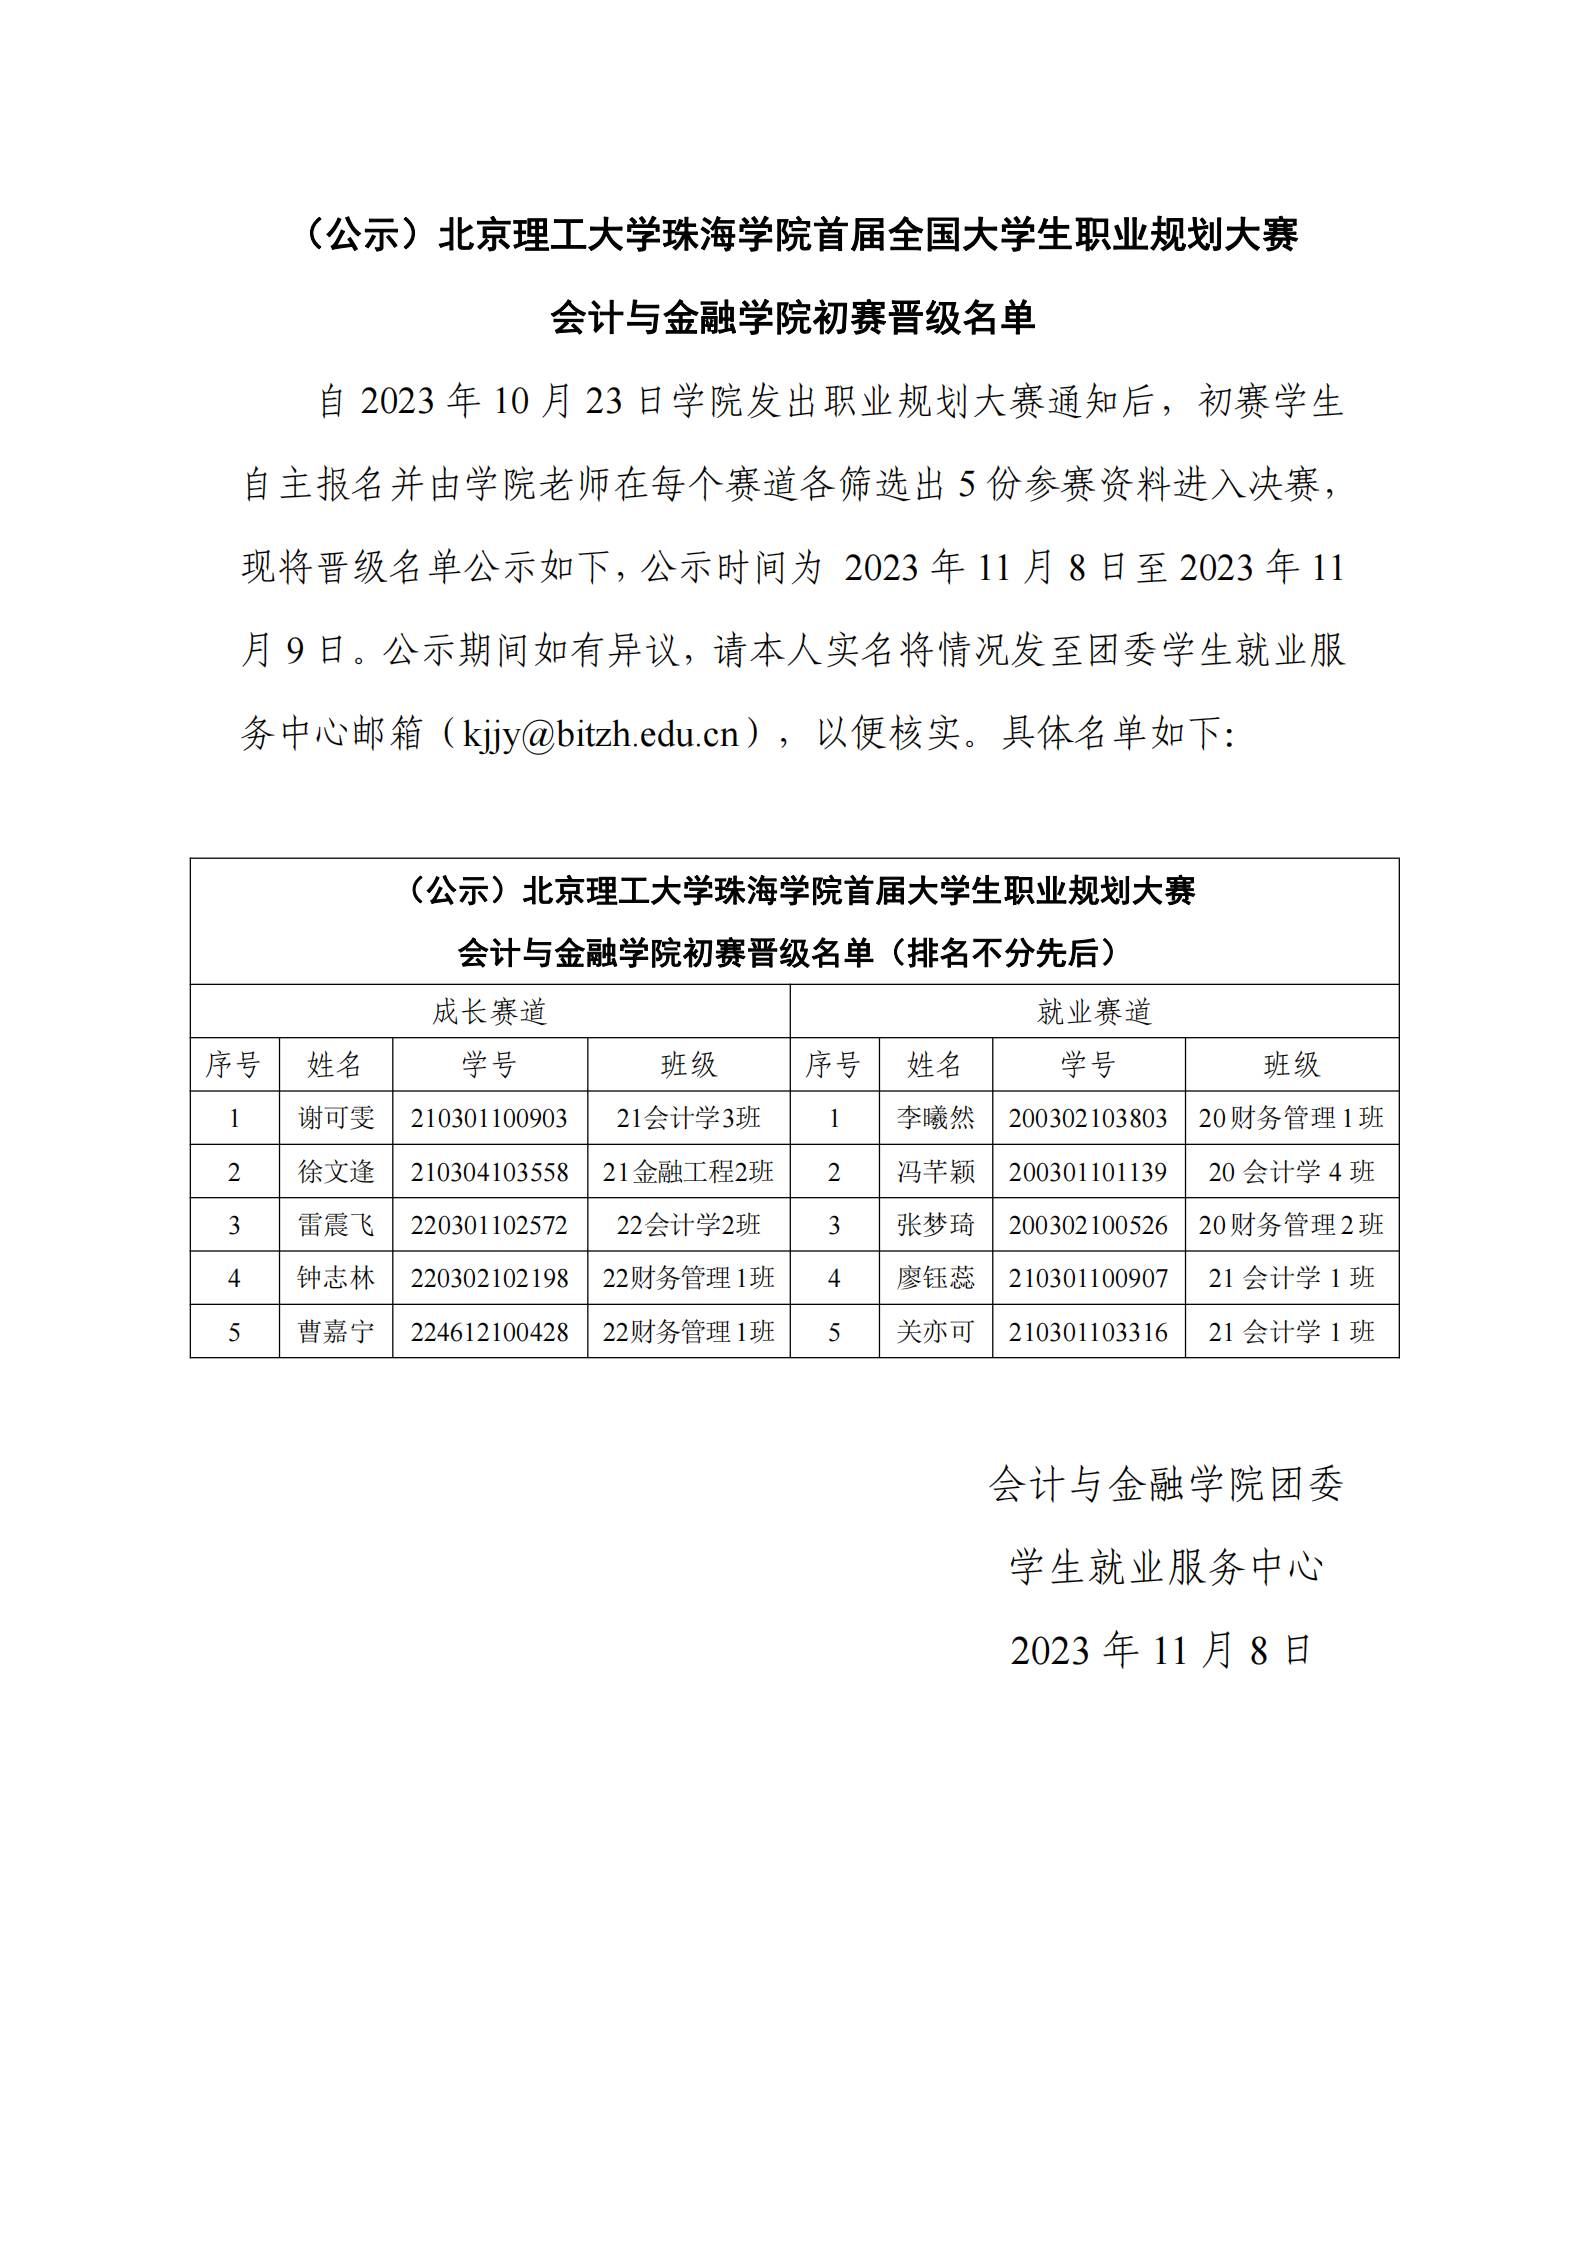 （公示）北京理工大学珠海学院首届全国大学生职业规划大赛会计与金融学院初赛晋级名单_00(1).jpg